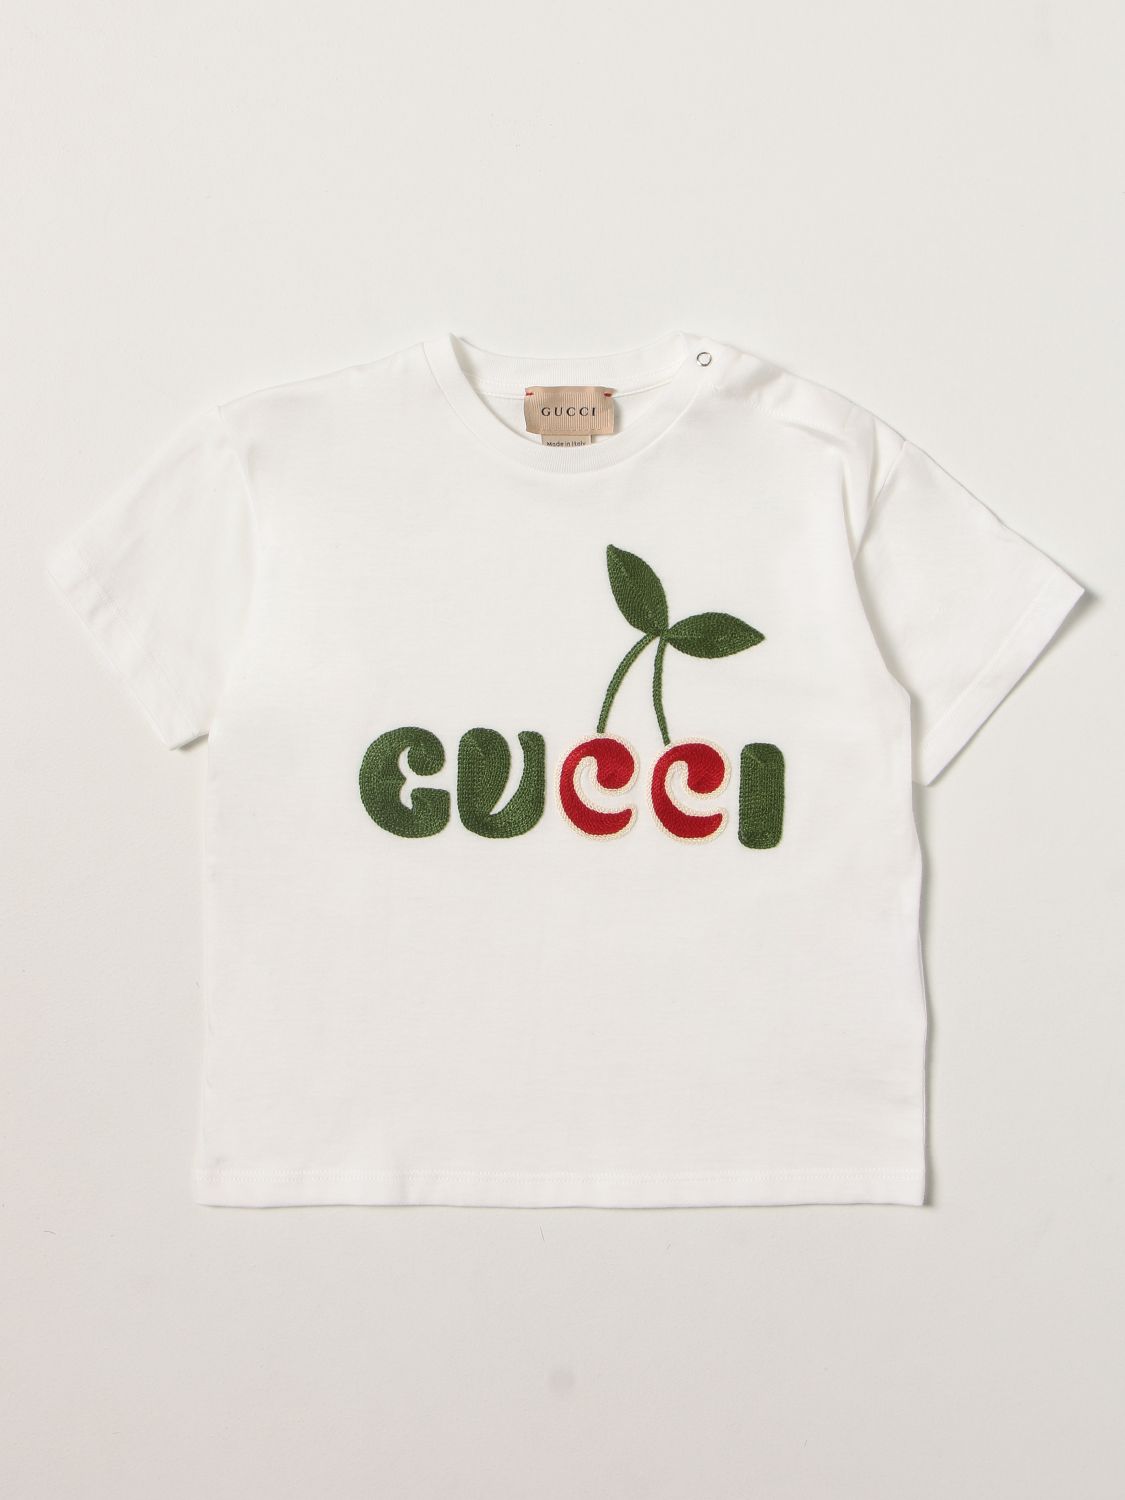 グッチ(GUCCI): Tシャツ 男の子 - ホワイト | Tシャツ グッチ 581019 XJDNY GIGLIO.COM